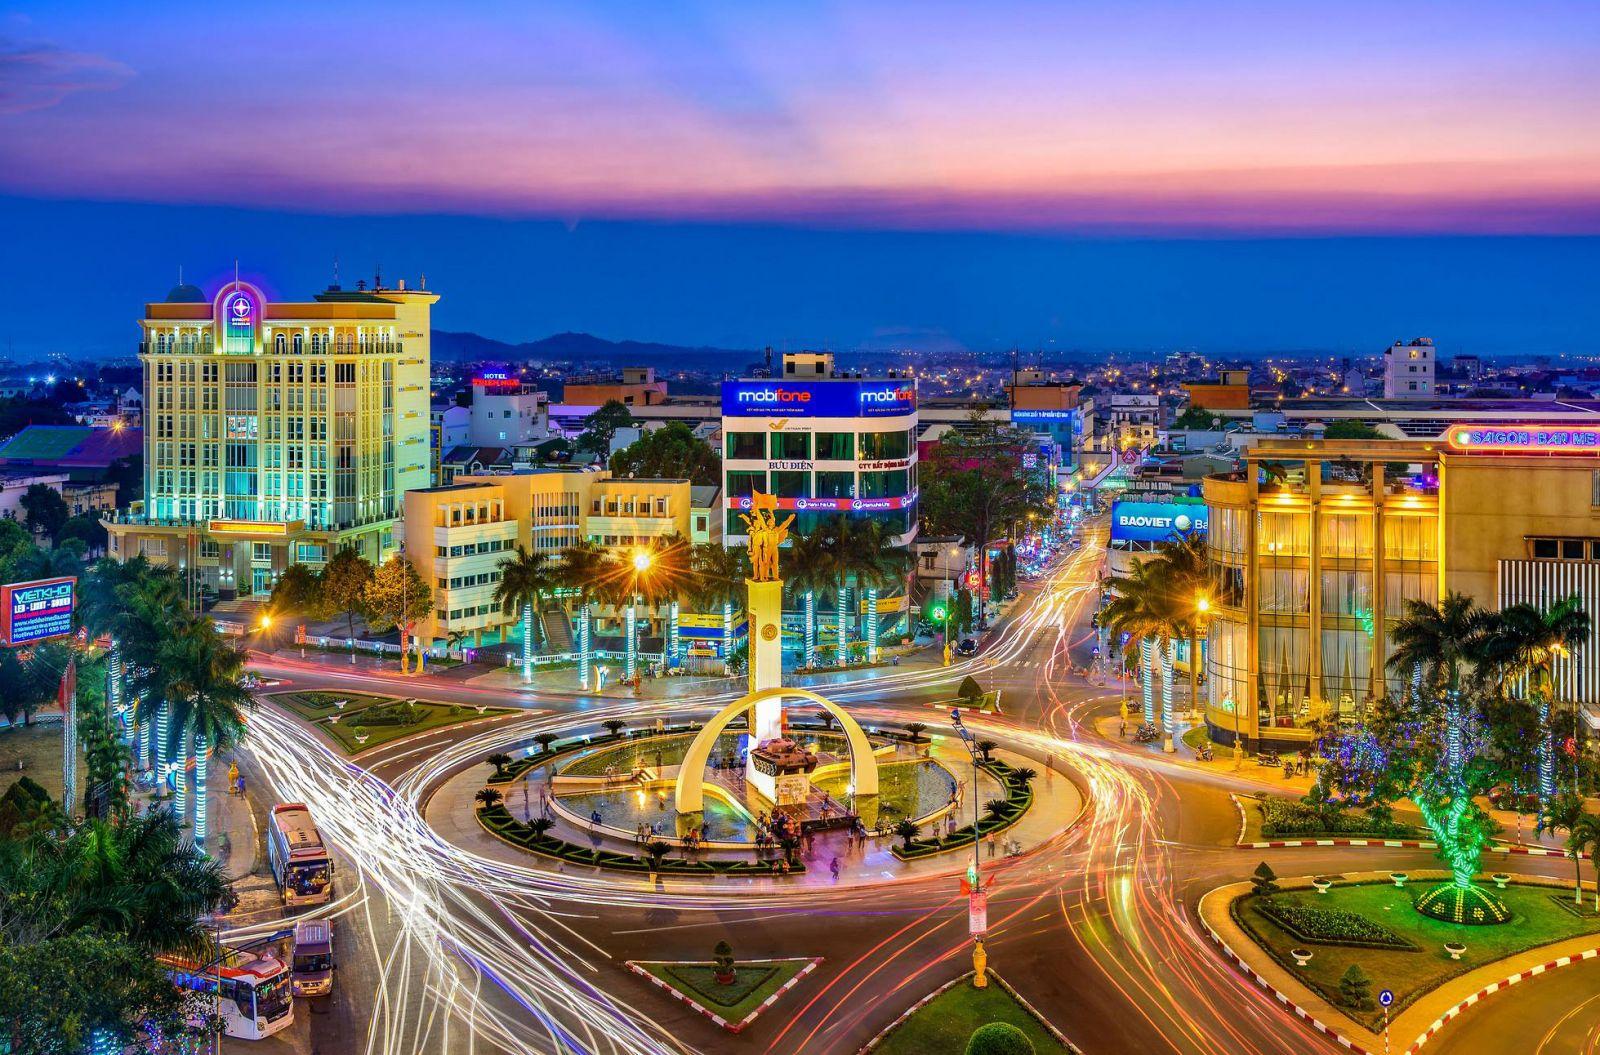 BẤT ĐỘNG SẢN ĐẮC LẮC: “BẾN ĐỖ” MỚI CỦA NHÀ ĐẦU TƯ - Viet Nam Smart City